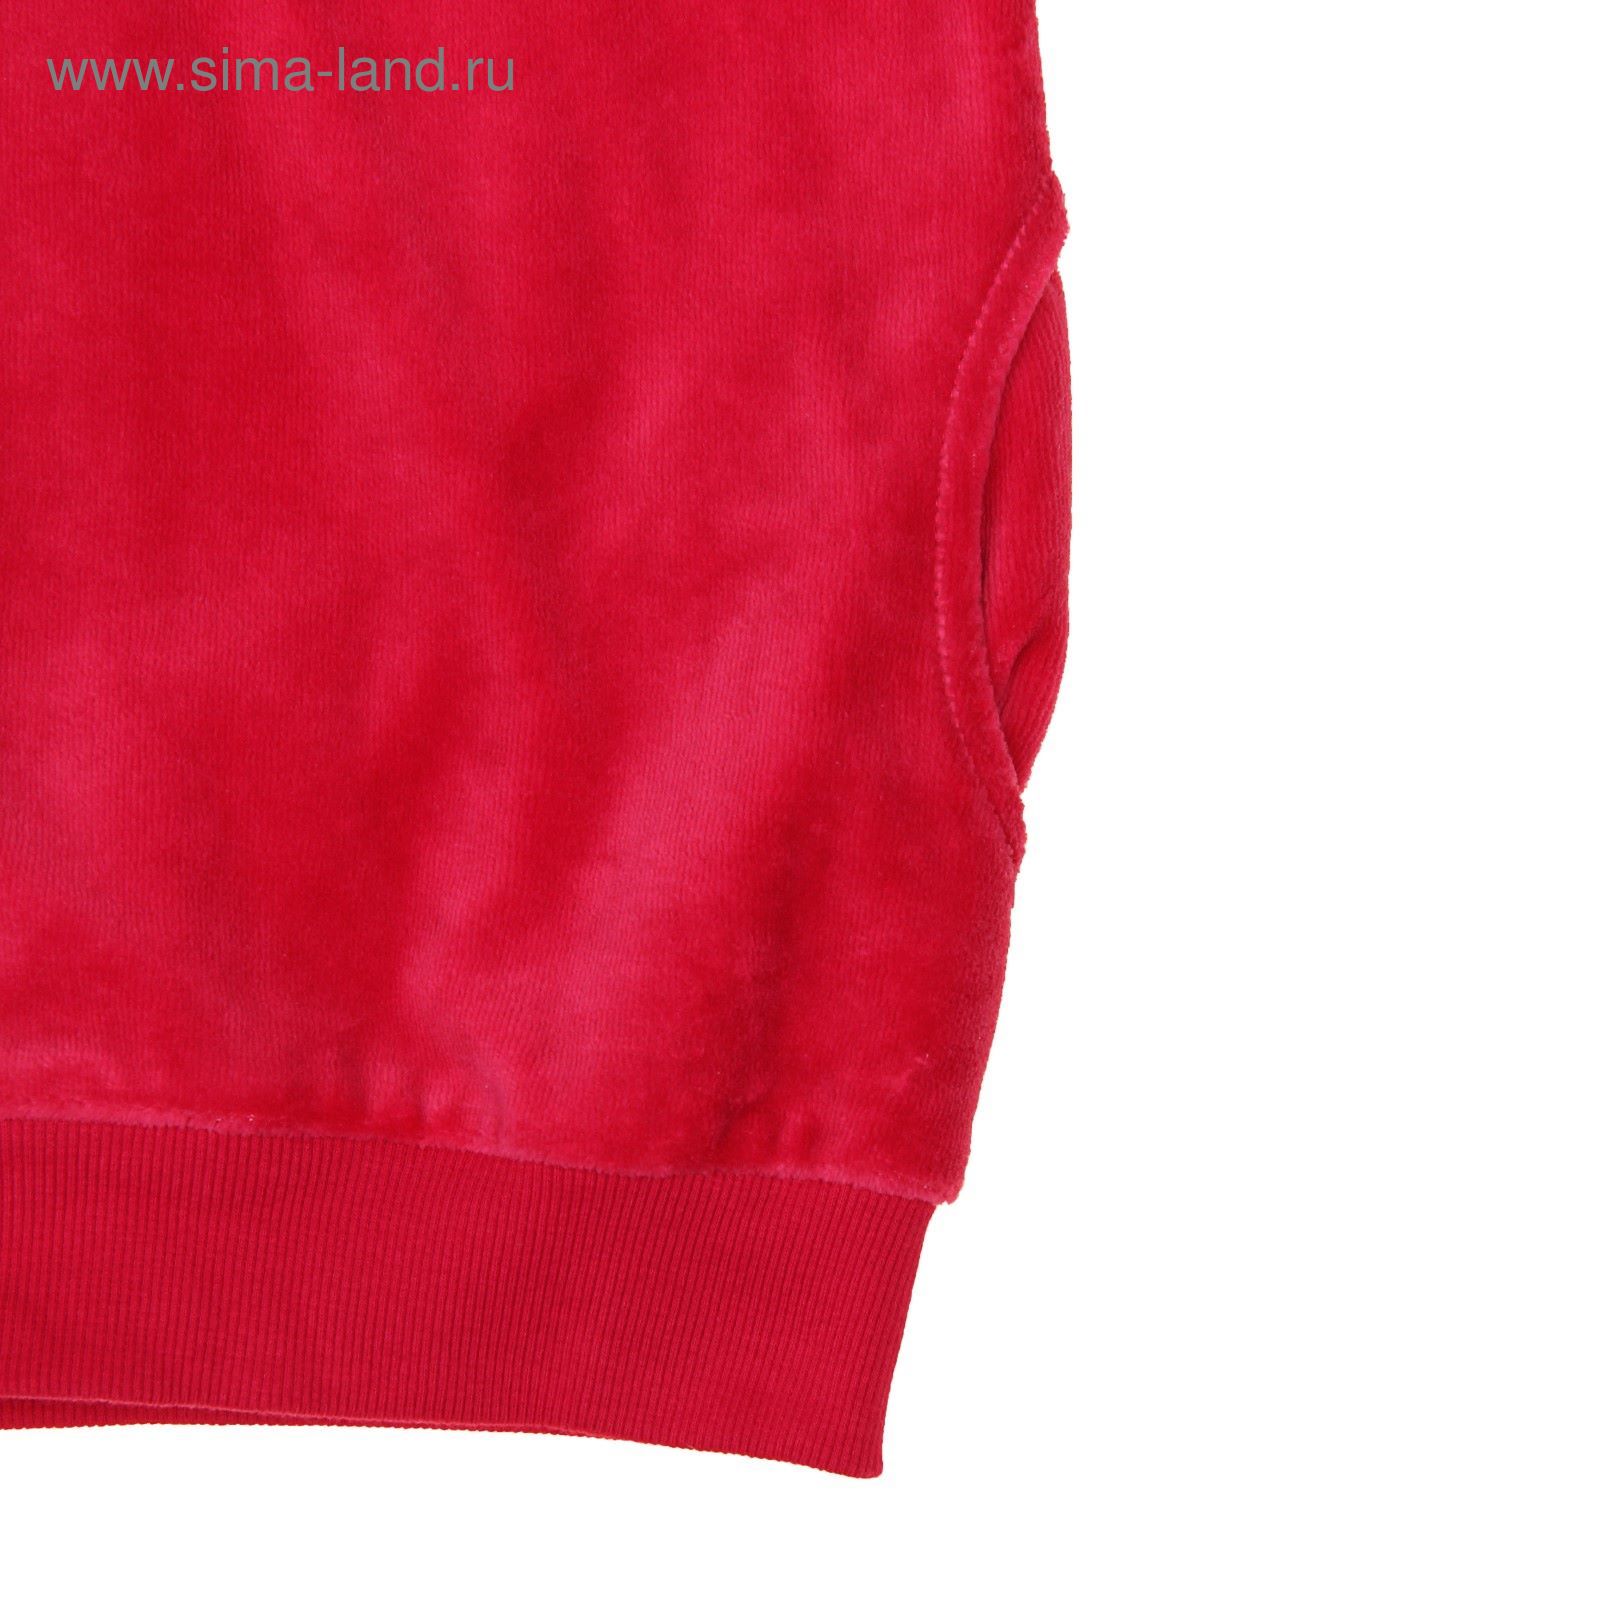 Комплект для девочки (толстовка, брюки), рост 110-116 см, цвет малиновый 080-М